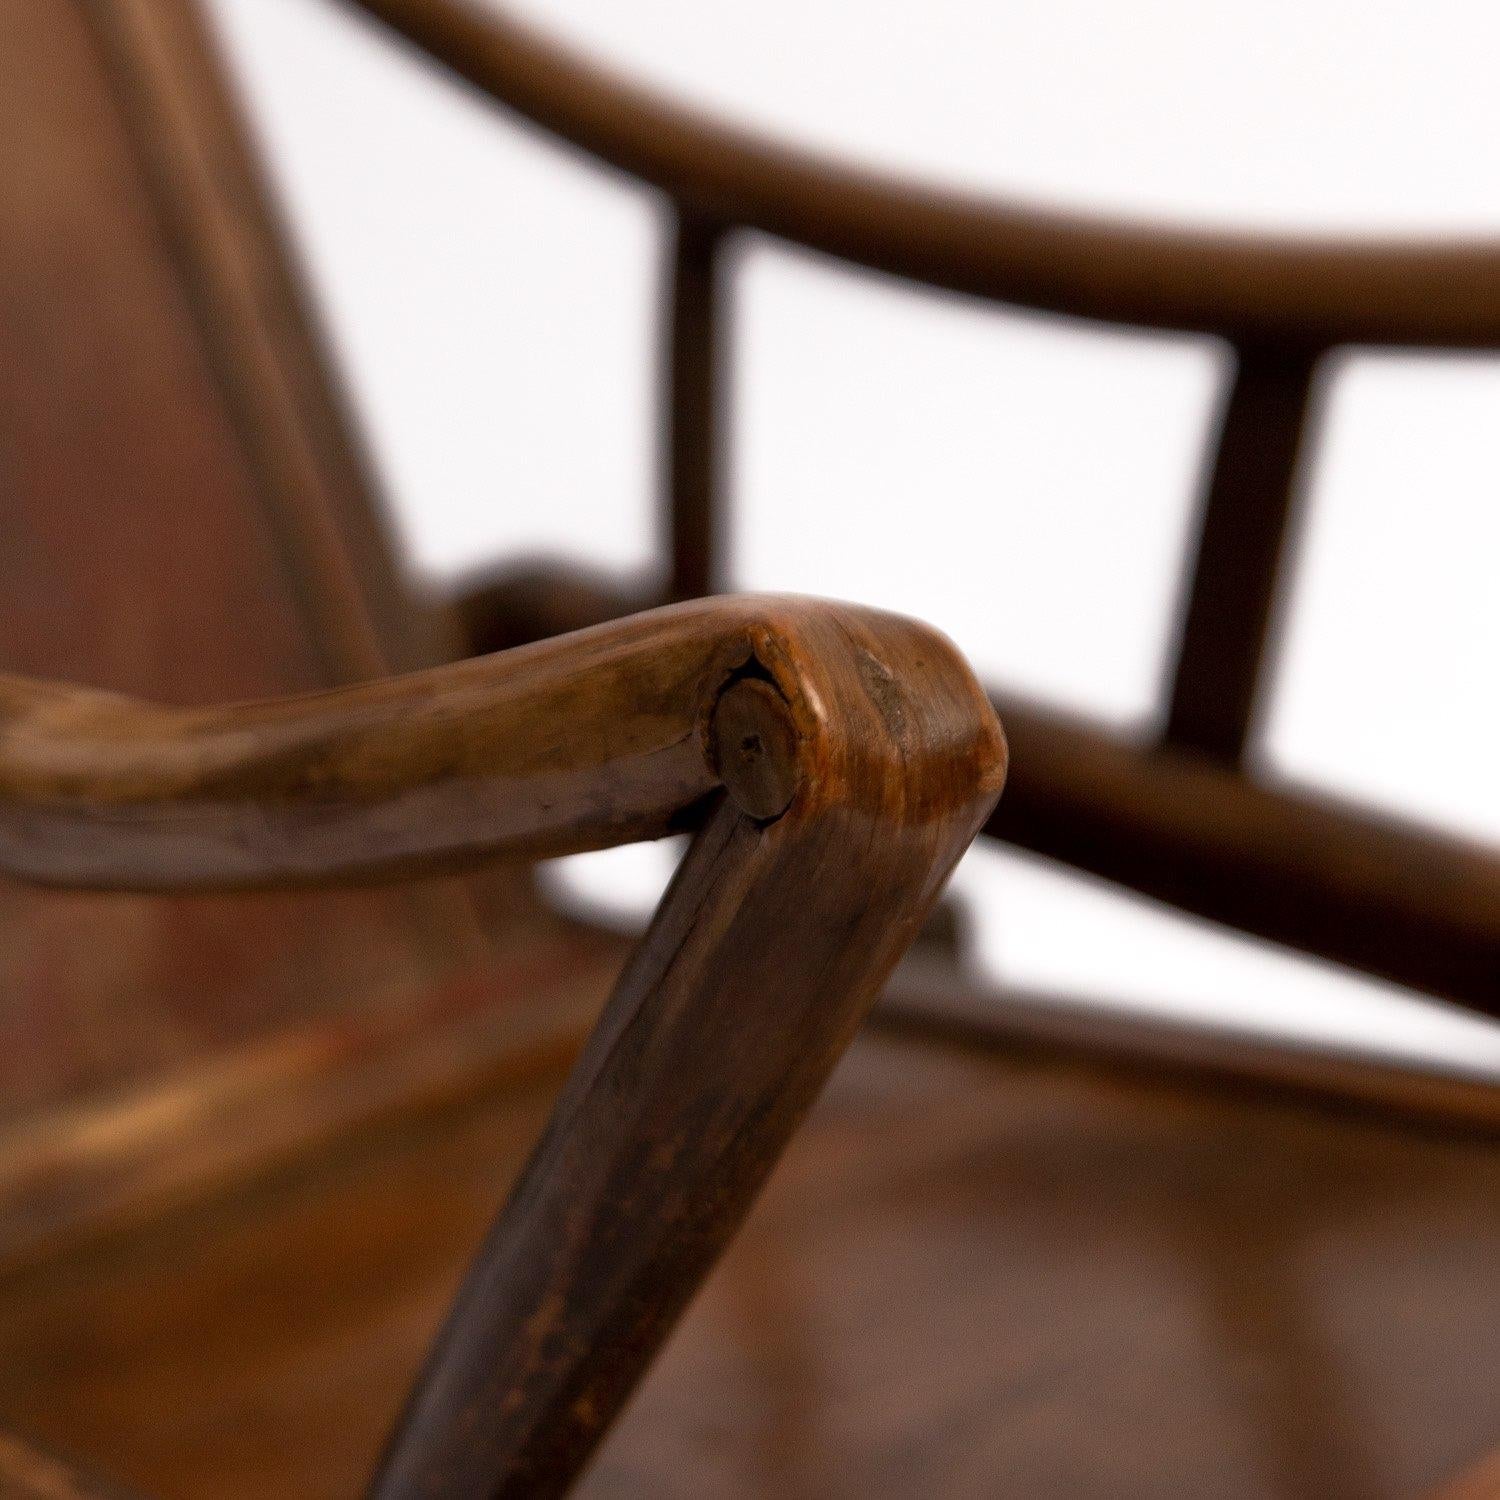 Original antike chinesische 19. Jahrhundert handgefertigt verstellbare Joch zurück hölzernen Liegestuhl. Verstellbare Rückenlehne und einzigartig geschwungene Armlehnen. Gute Farbe und Patina. Die verstellbare Yoke-Rückenlehne wird durch die schönen